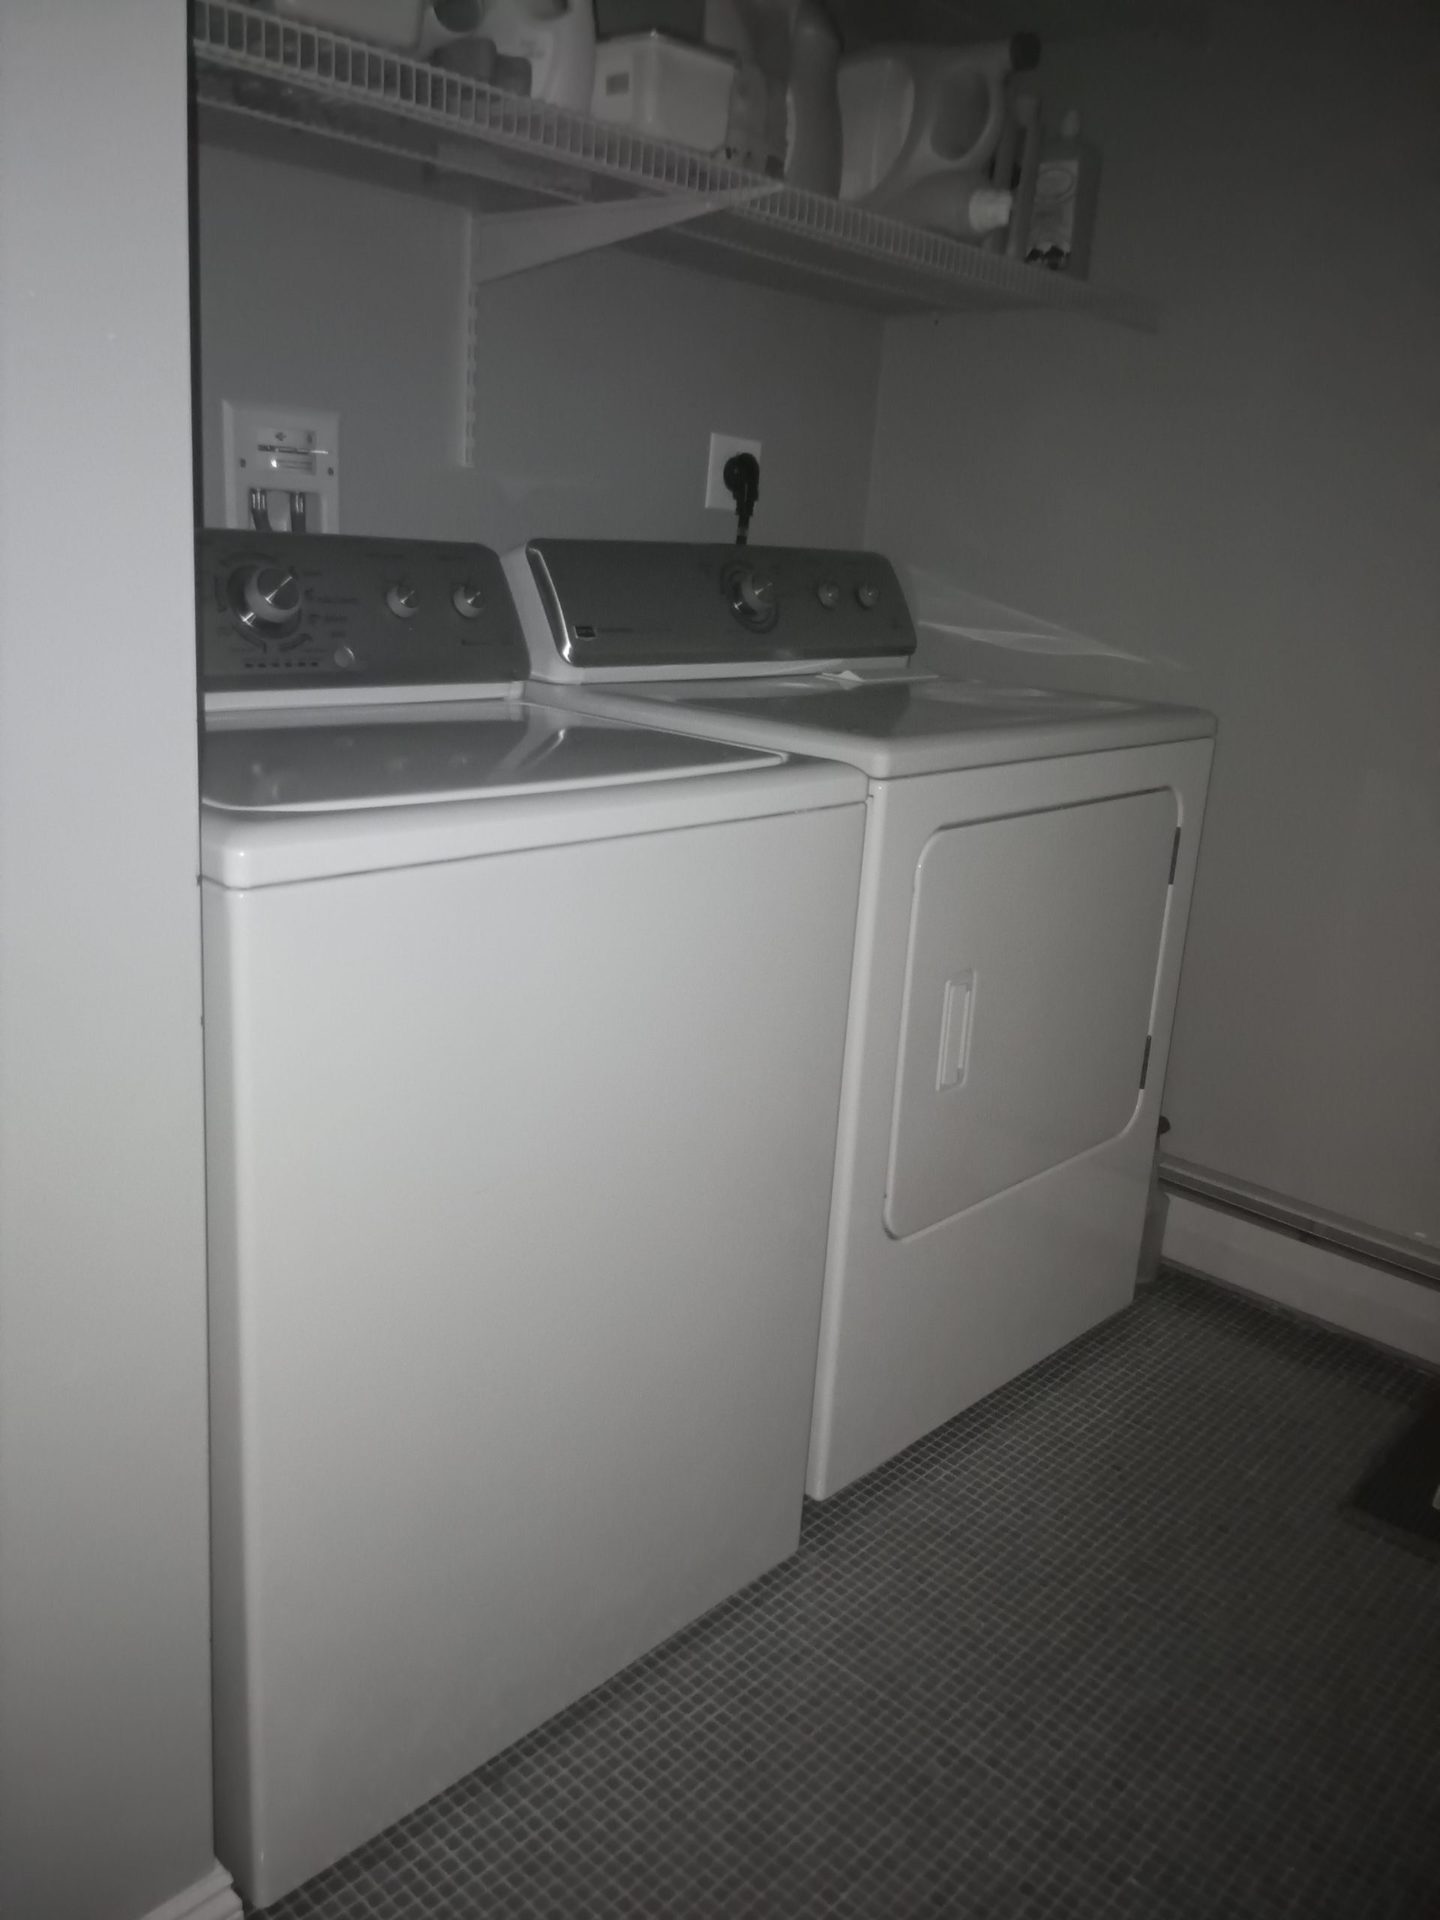 Ulefone装甲11 5G夜视摄像机样品在洗衣房中显示洗衣机和干衣机。